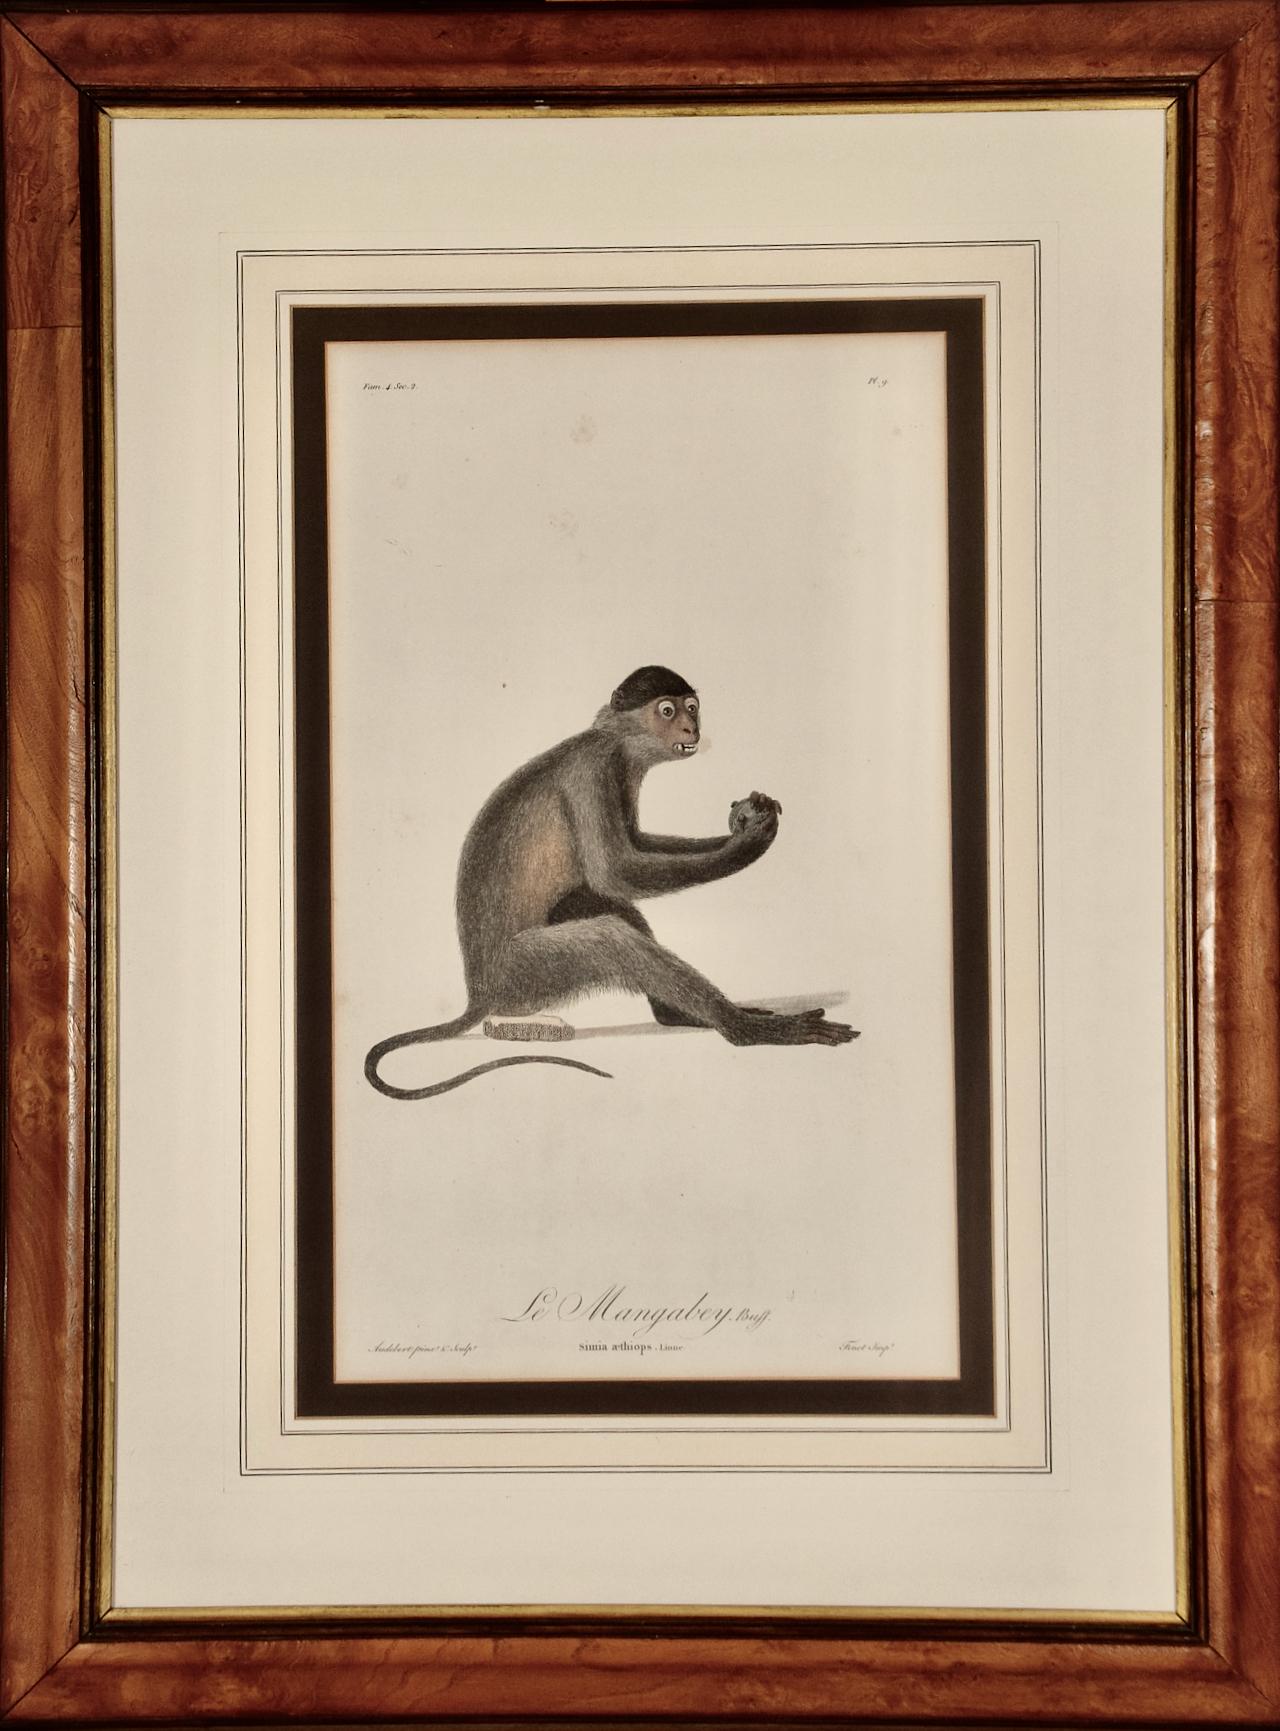  Le Mangabey Monkey : Gravure encadrée Audebert du 18e siècle, colorée à la main